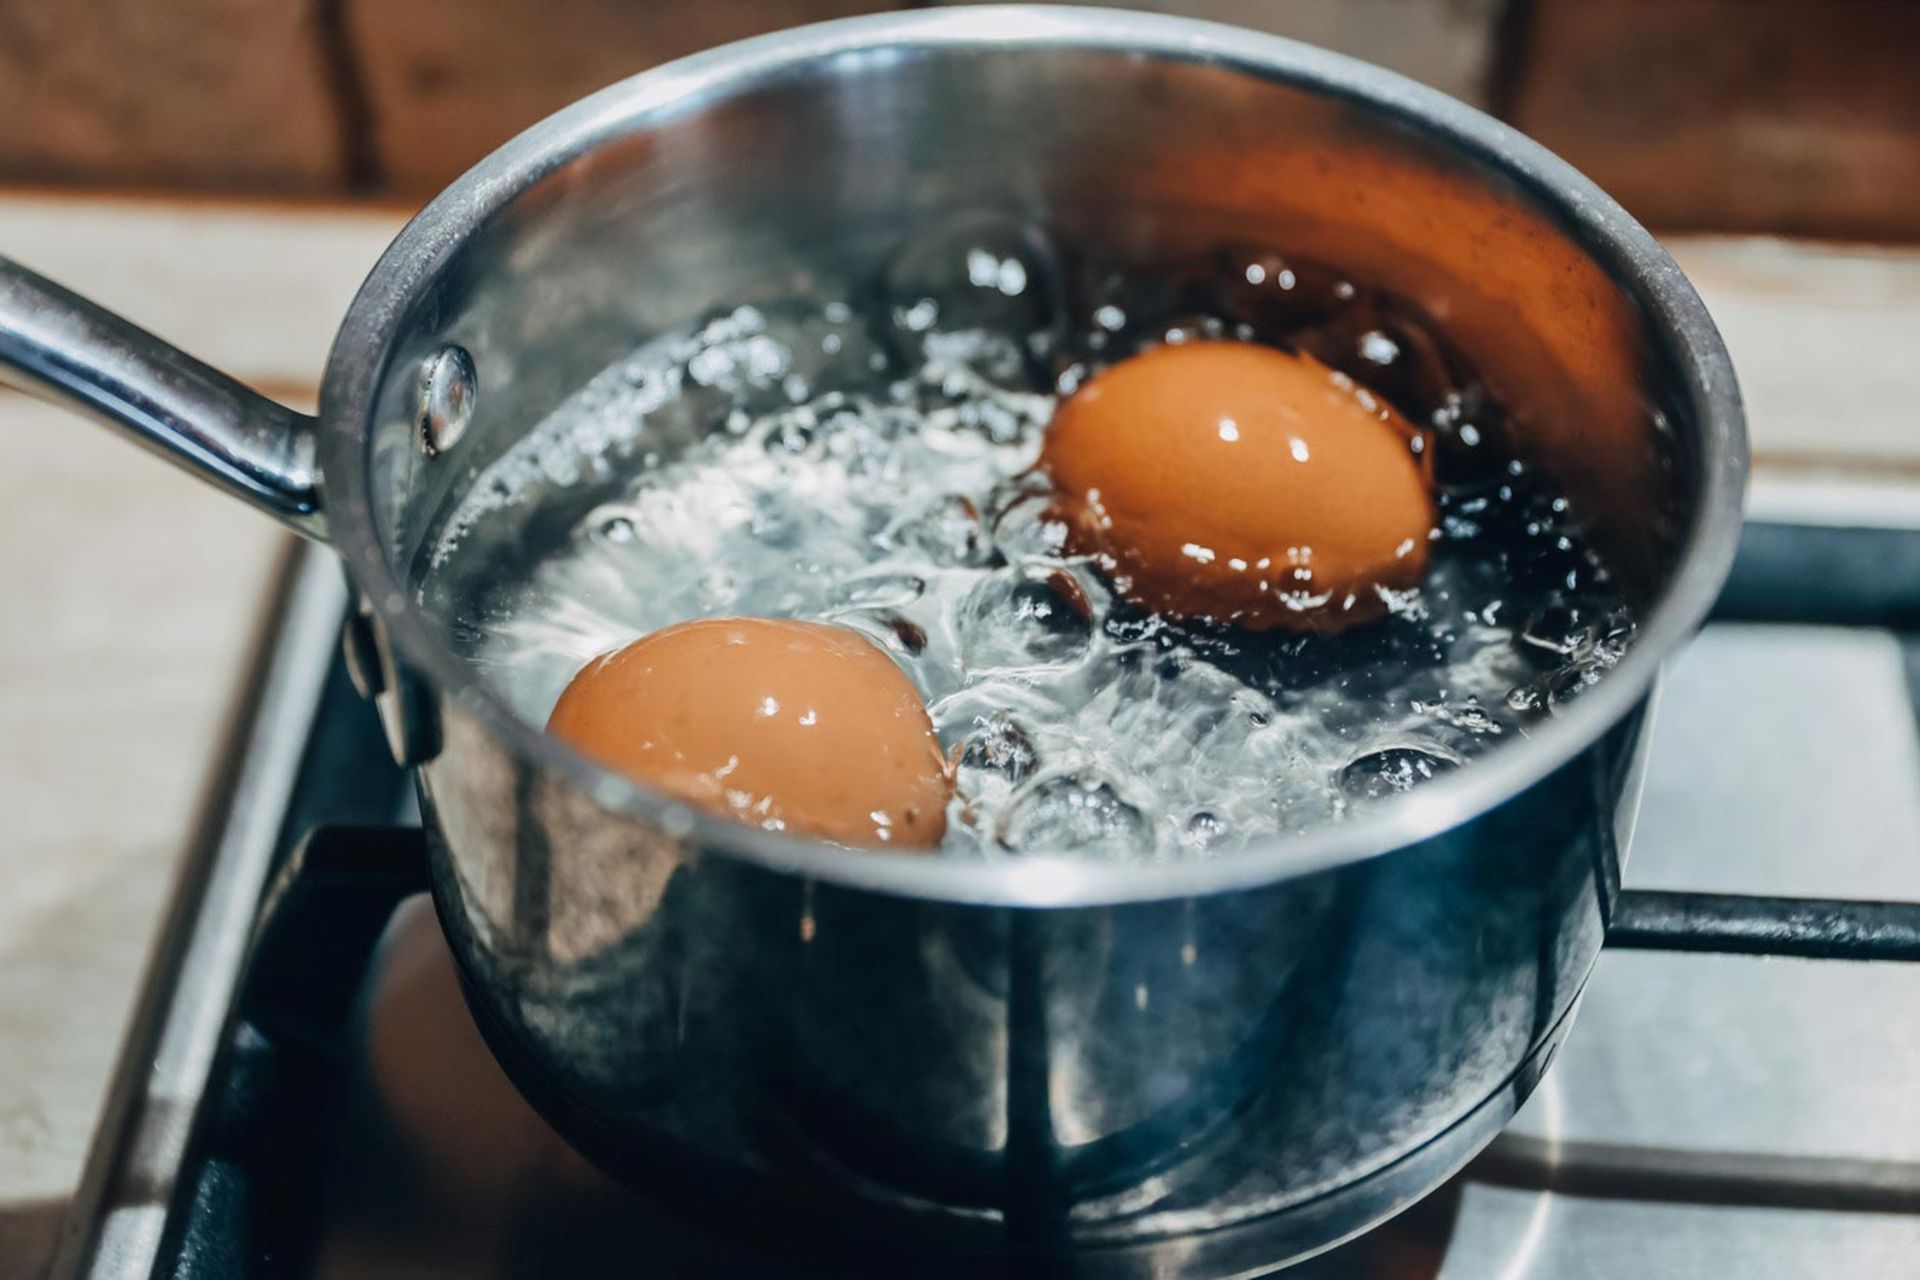 دو تخم مرغ محلی درحال پختن در ظرف آب جوش